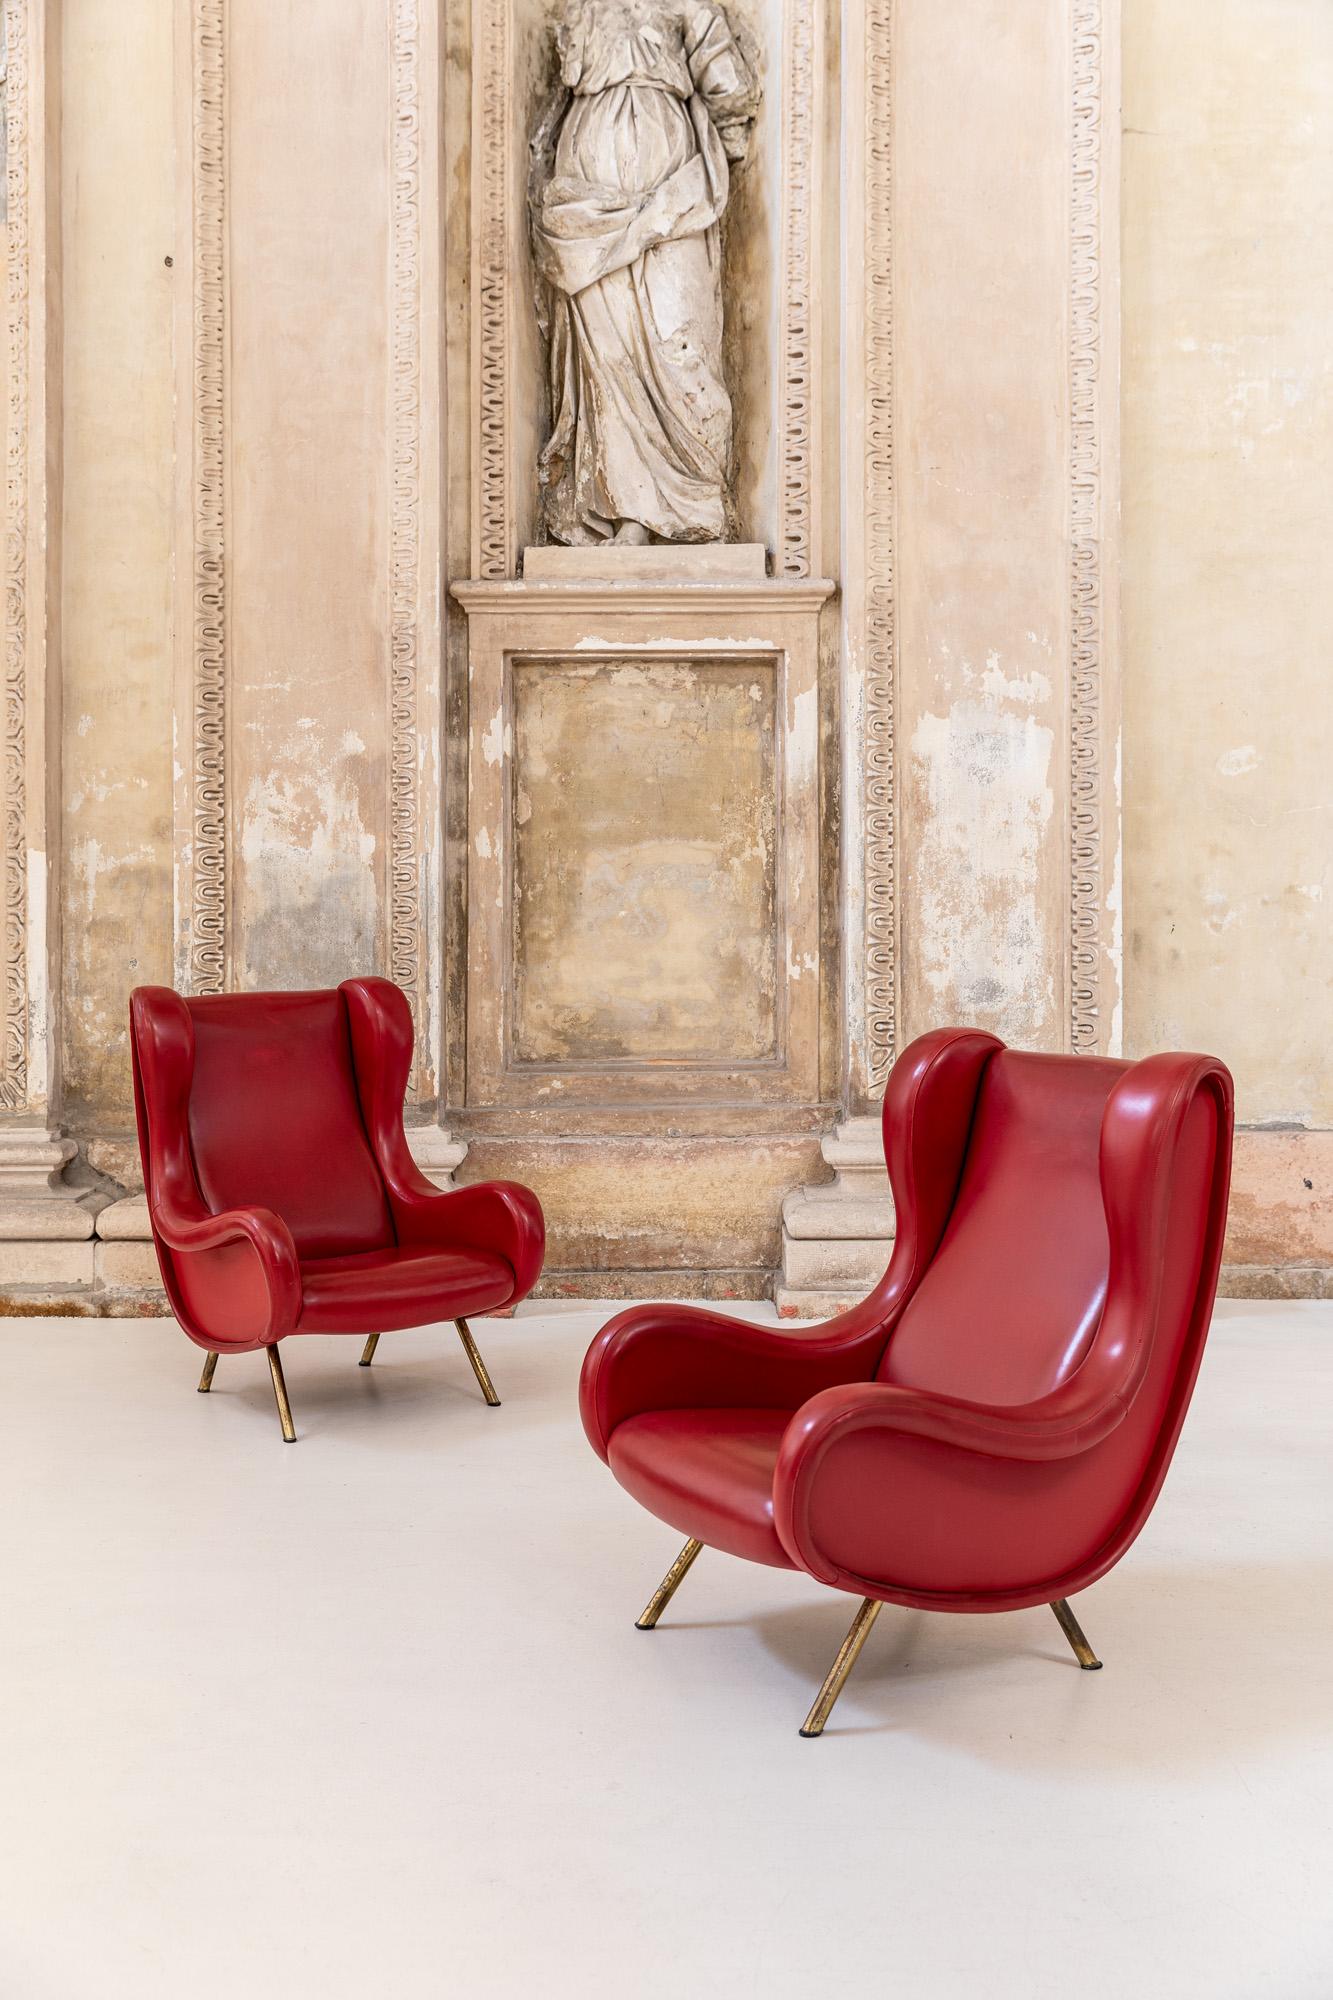 Ikonisches Sesselpaar, entworfen von Marco Zanuso und hergestellt von Arflex, Italien, 1960.
Diese beiden Loungesessel haben ihre Original-Lederbezüge.
Prächtiger Satz Stühle in ausgezeichnetem Zustand. 
Die Messingbeine sind ebenfalls im